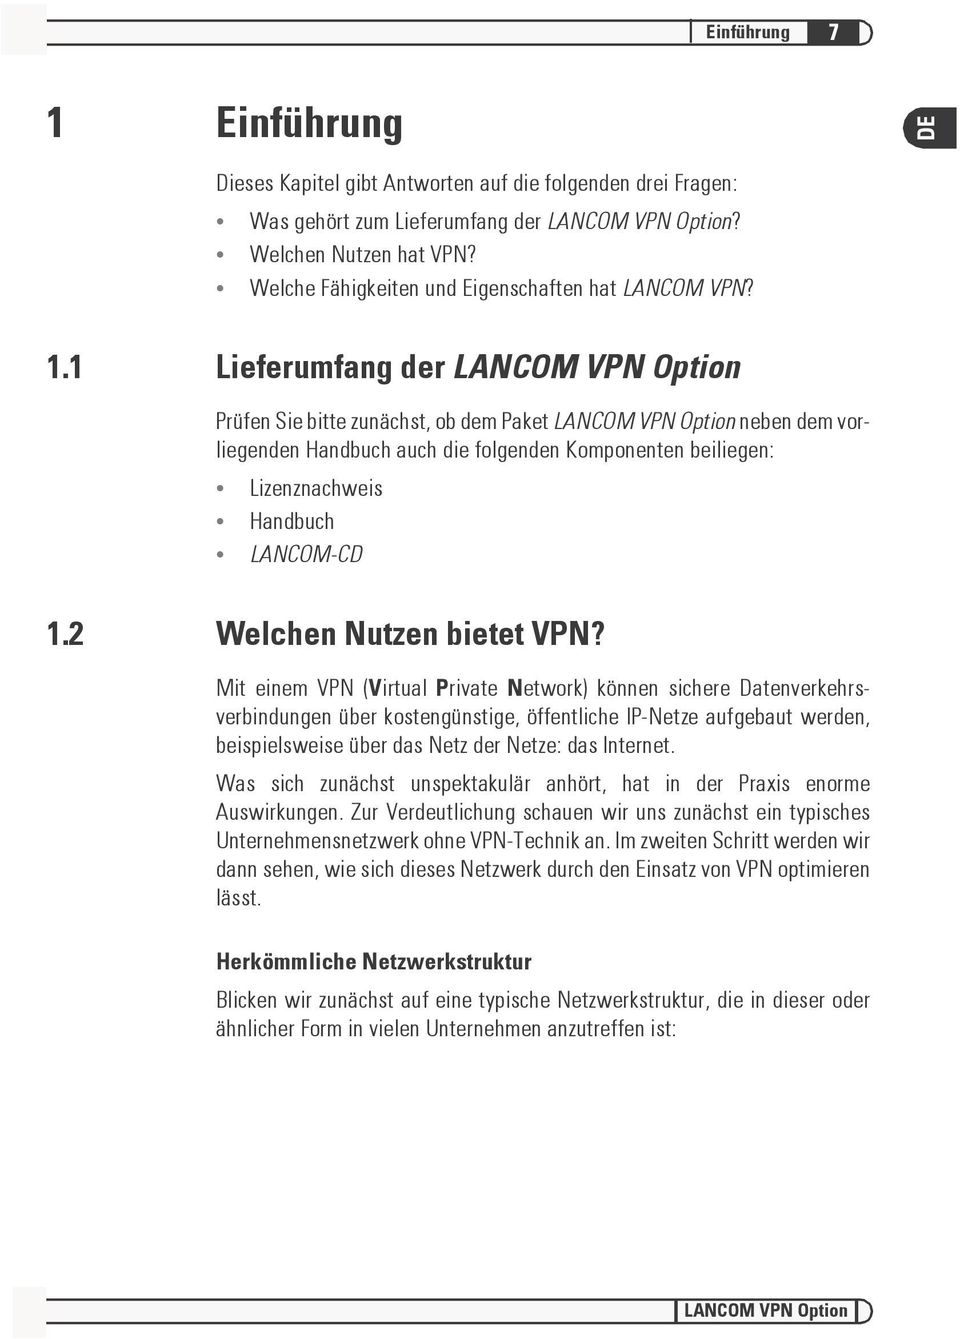 1 Lieferumfang der LANCOM VPN Option Prüfen Sie bitte zunächst, ob dem Paket LANCOM VPN Option neben dem vorliegenden Handbuch auch die folgenden Komponenten beiliegen: Lizenznachweis Handbuch